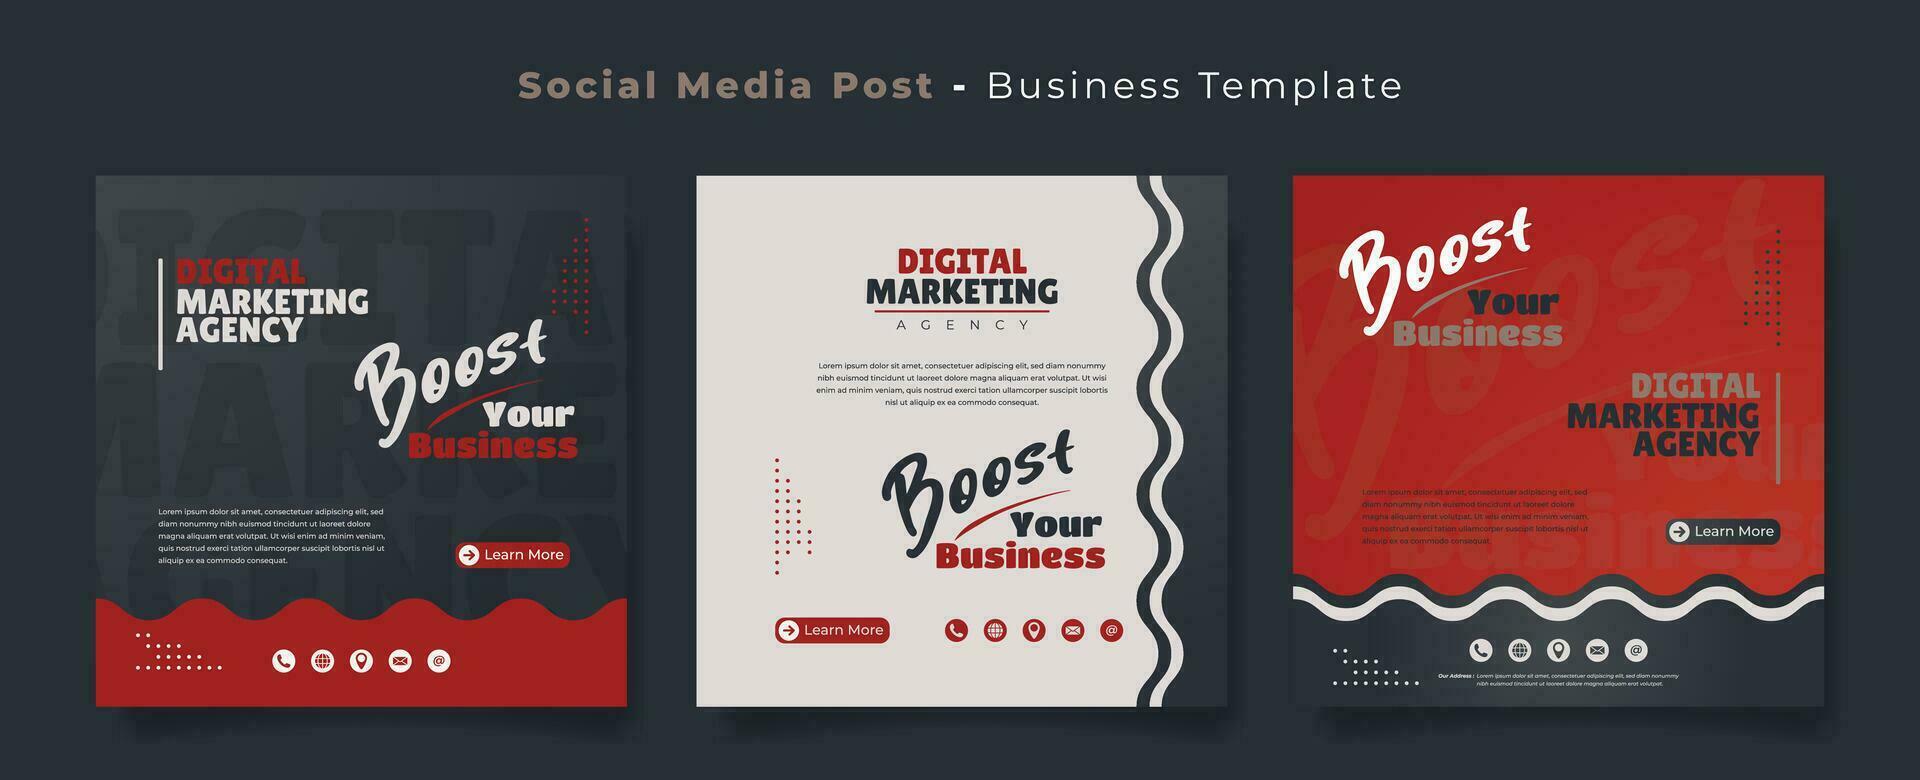 Sozial Medien Post Vorlage im rot schwarz Weiß und winken Hintergrund zum Werbung Design vektor